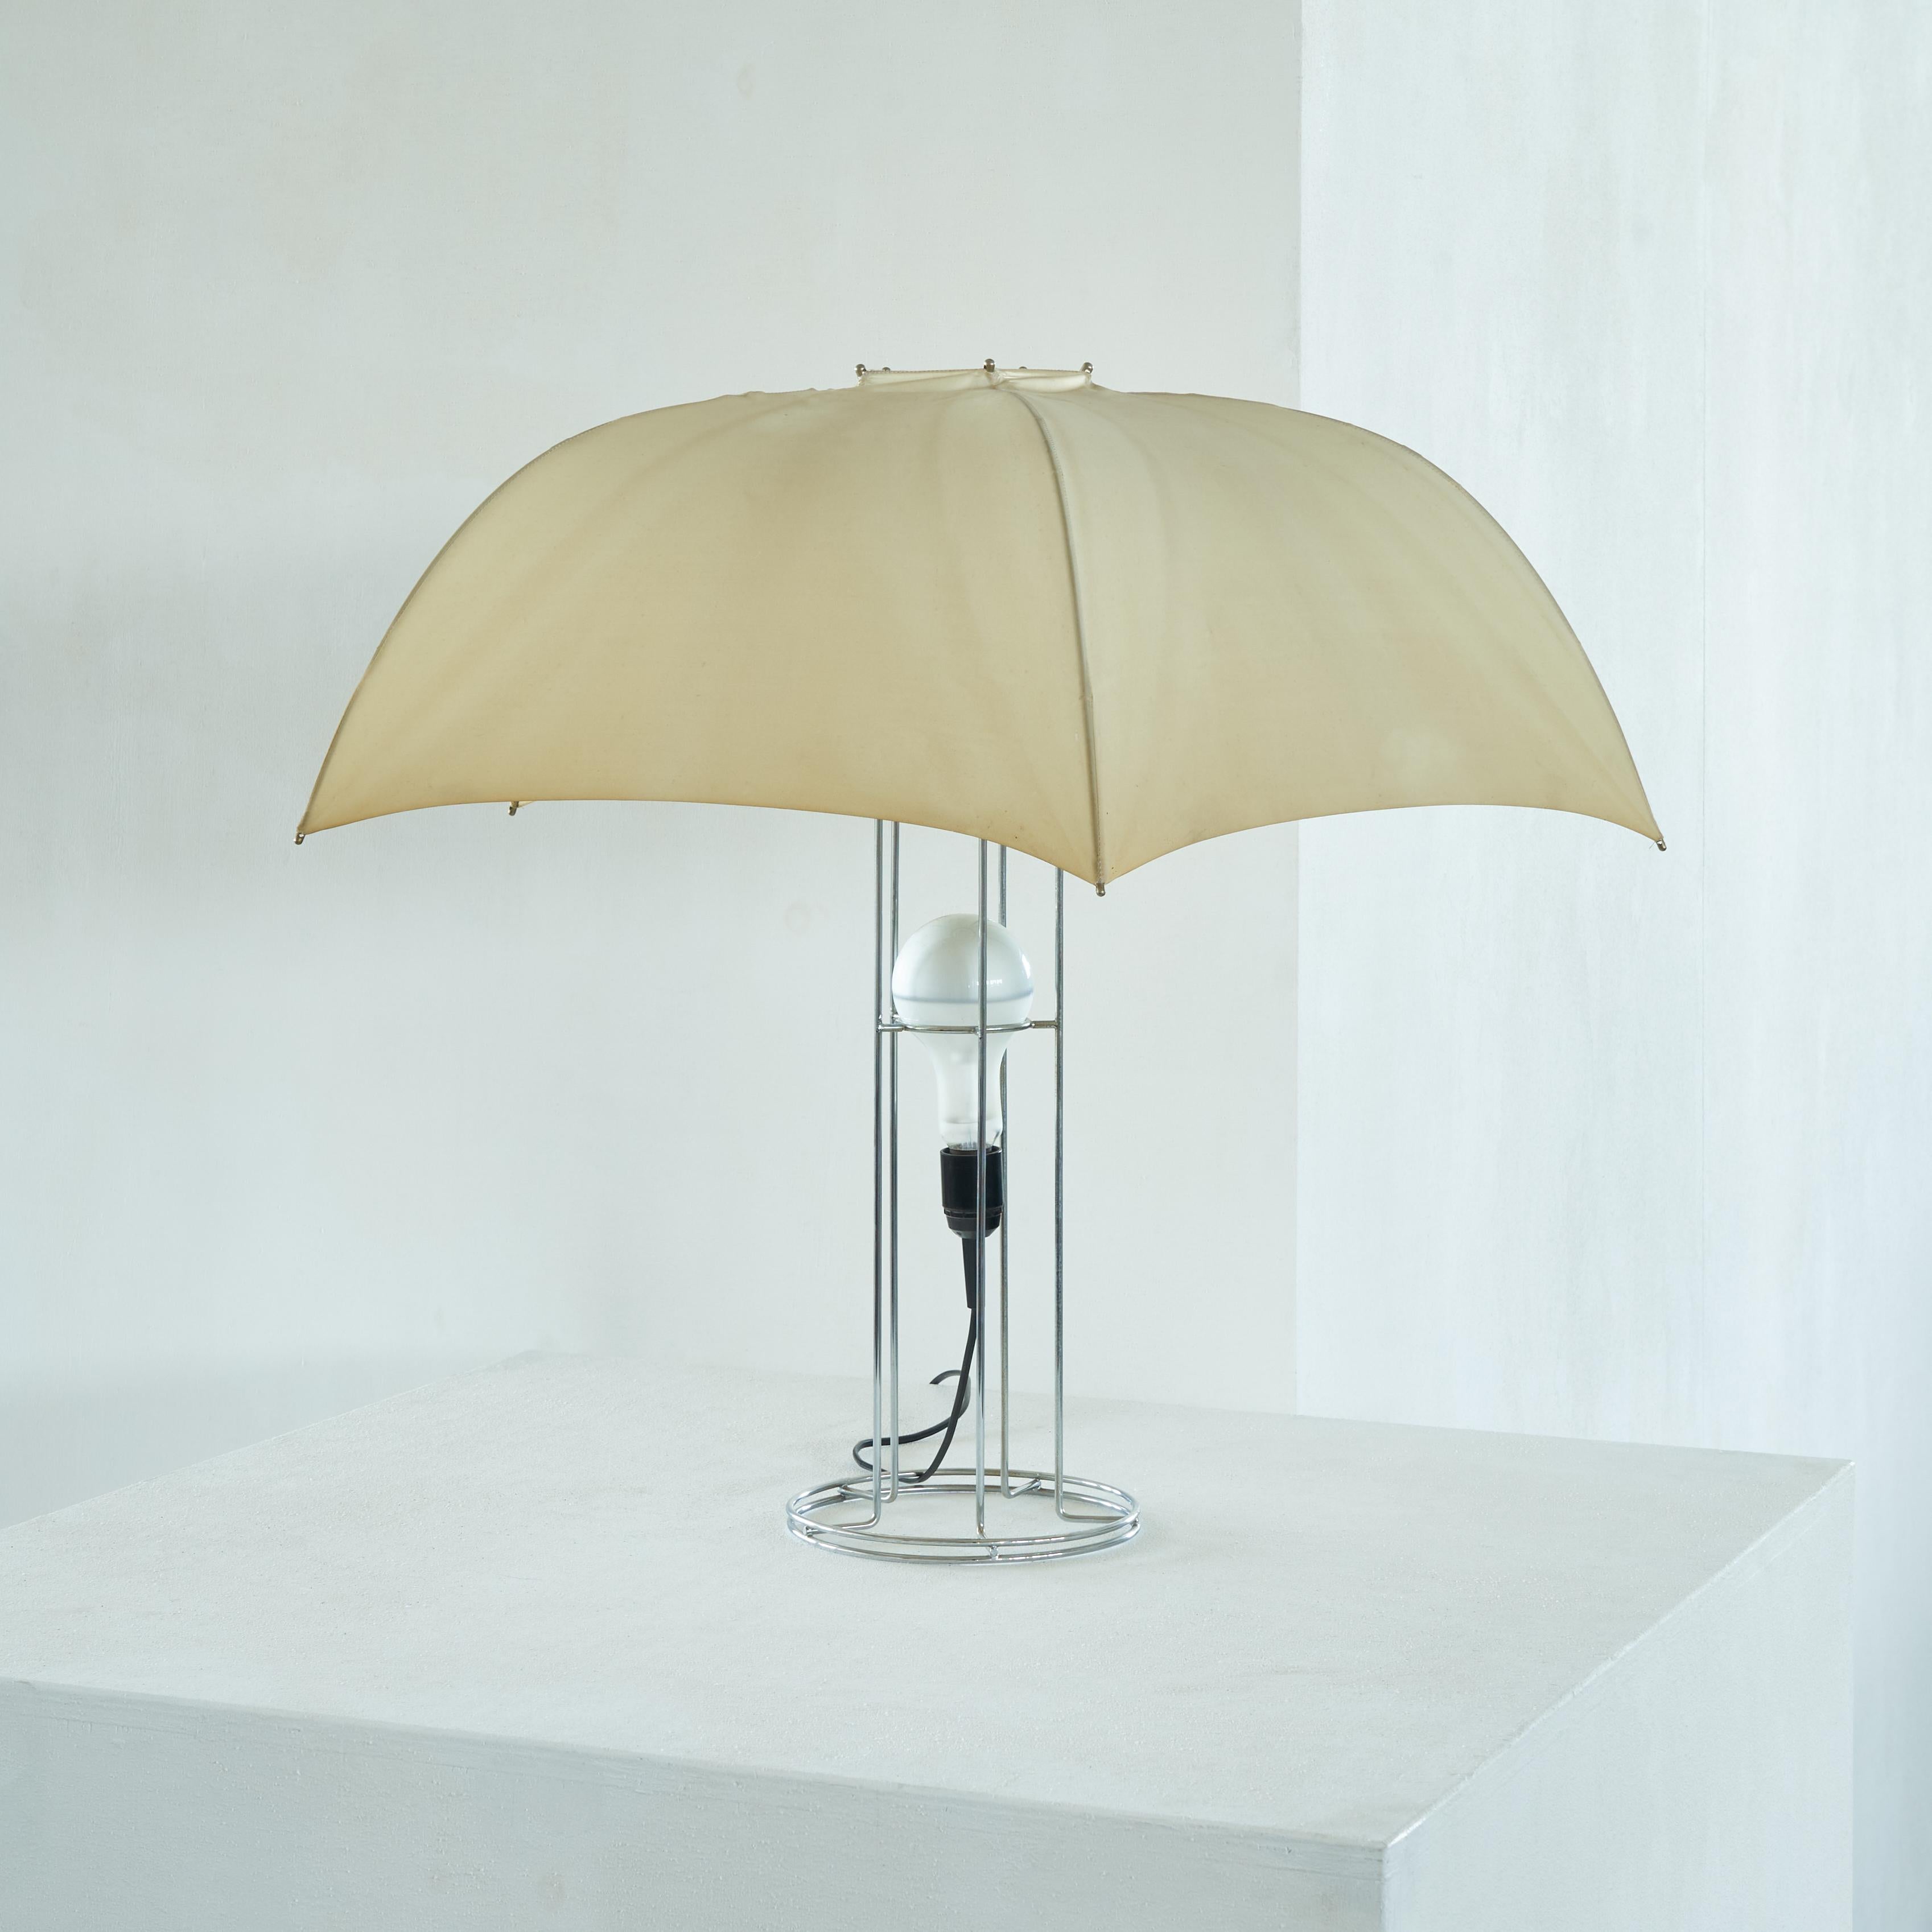 Gijs Bakker Umbrella Table Lamp for Artimeta 1973 In Good Condition For Sale In Tilburg, NL